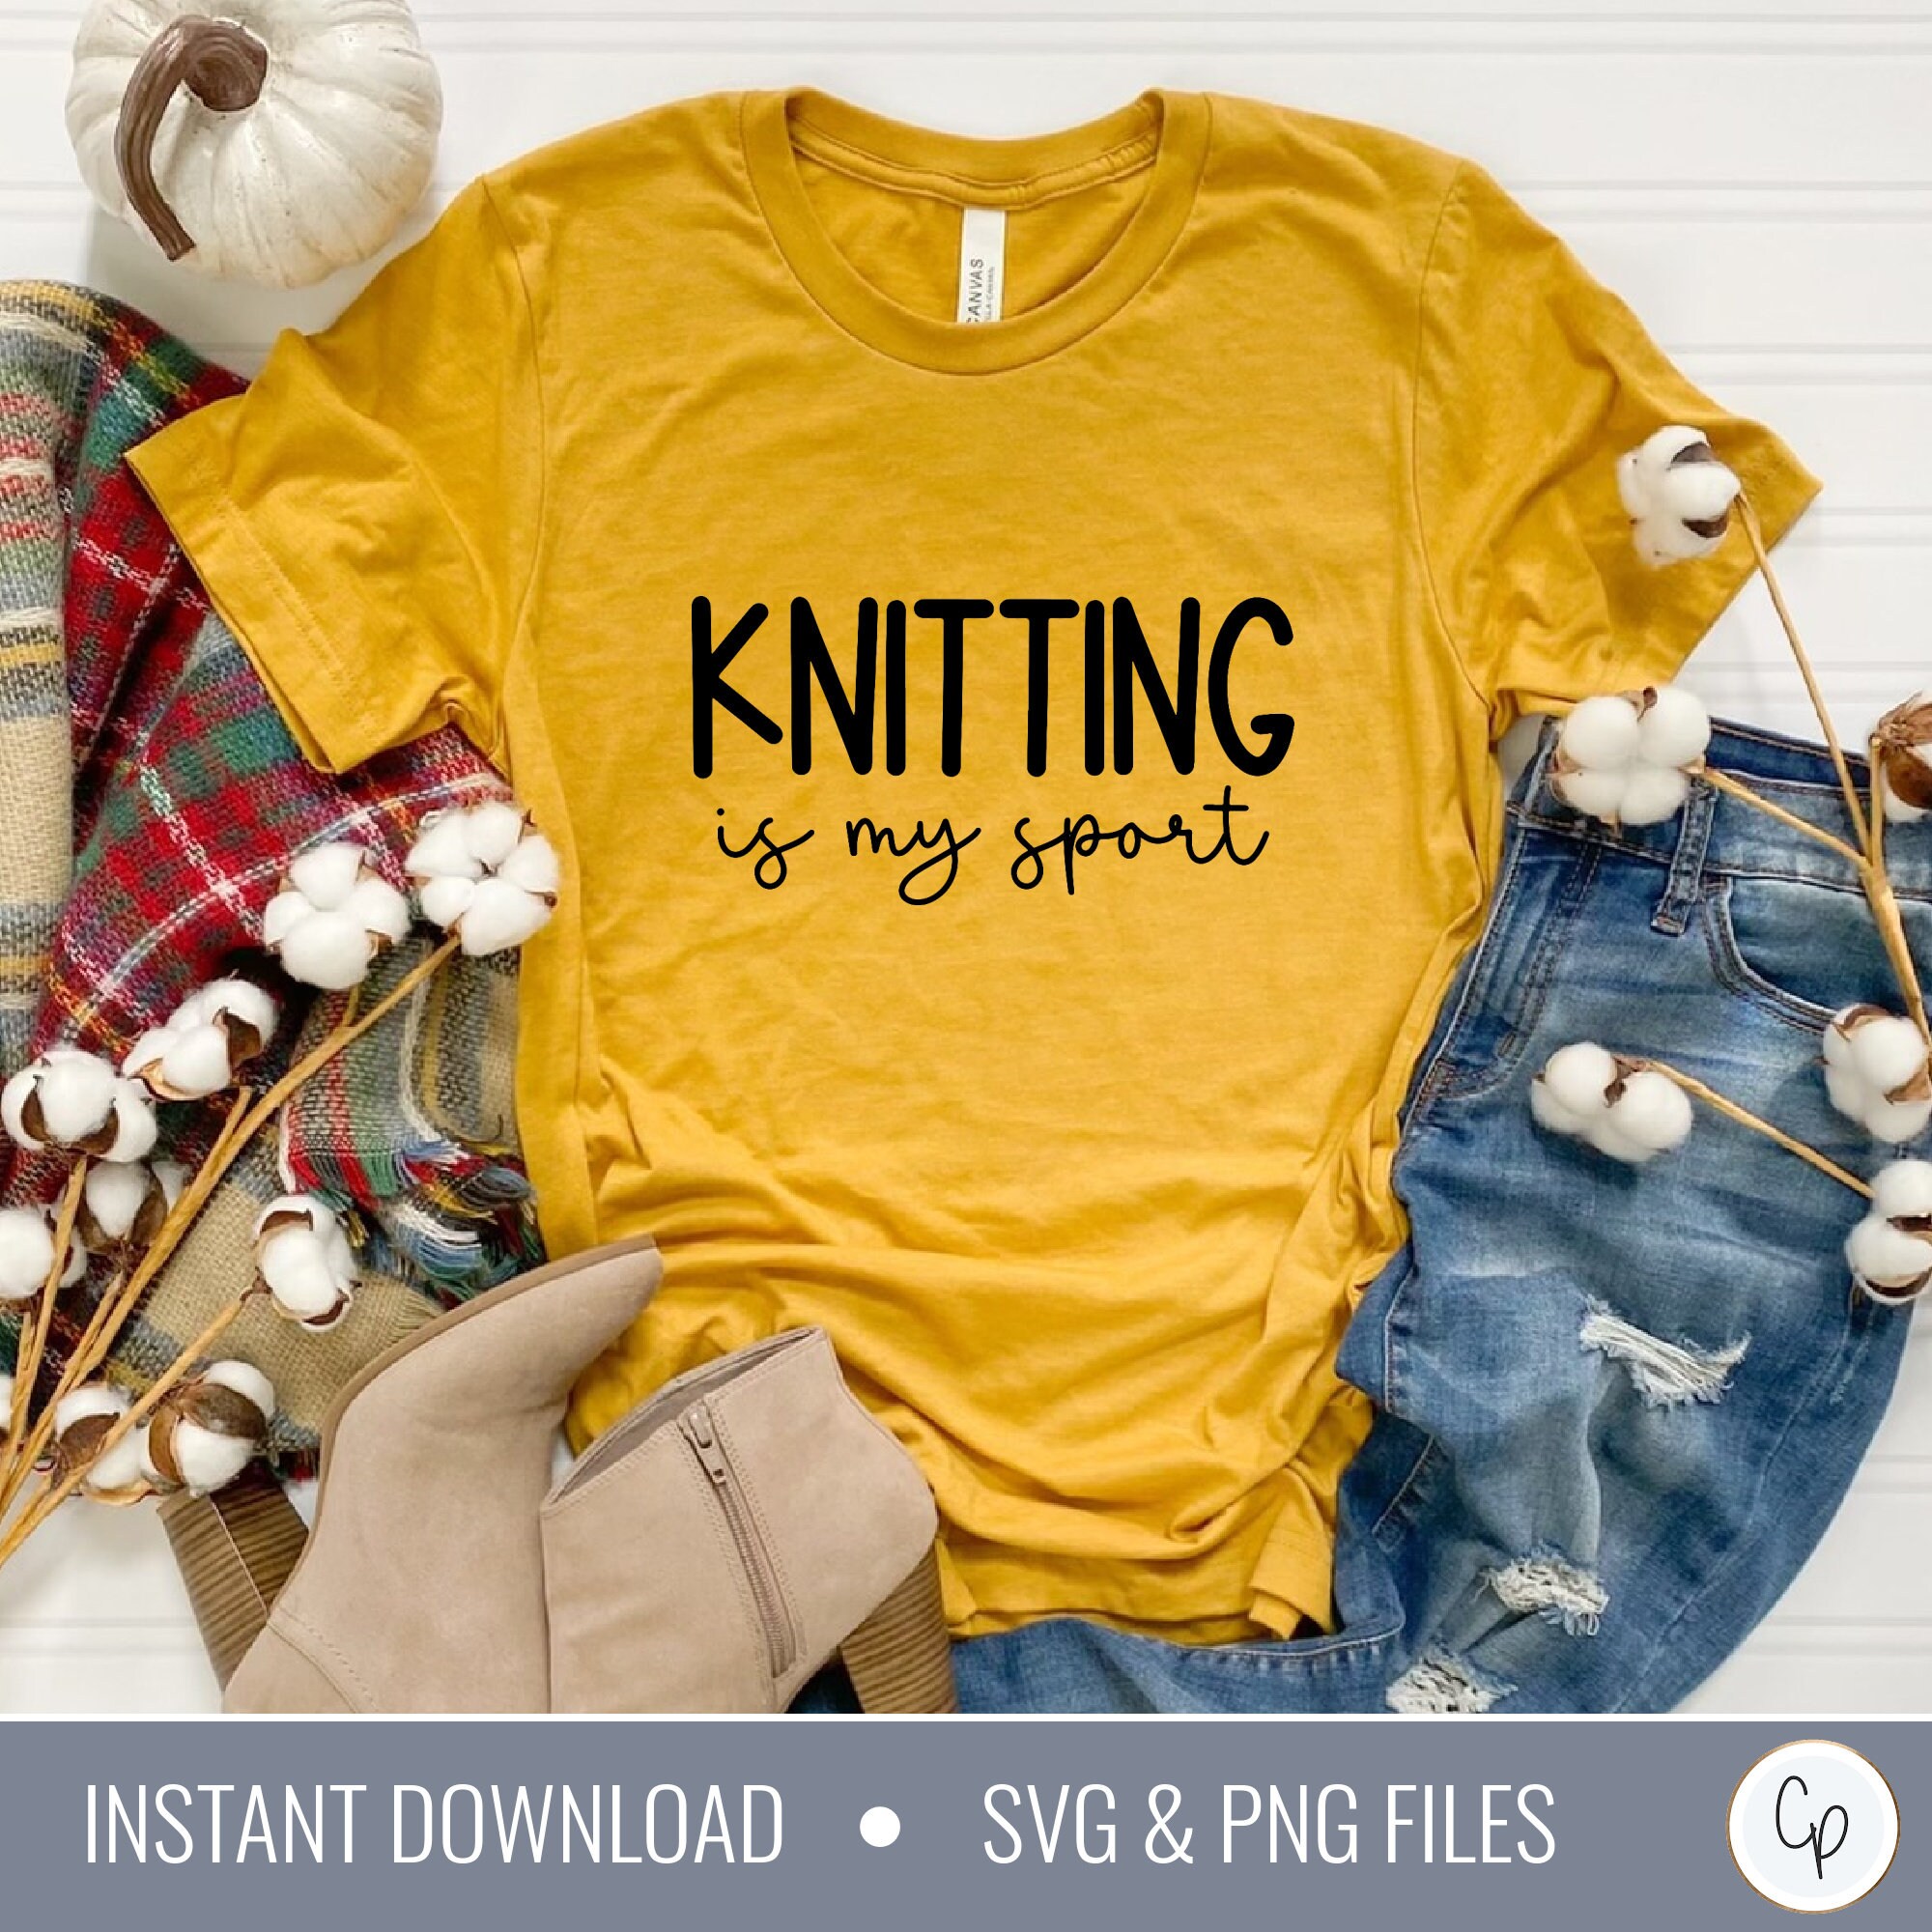 I'd Rather Be Knitting, Hand Lettered Knitting SVG